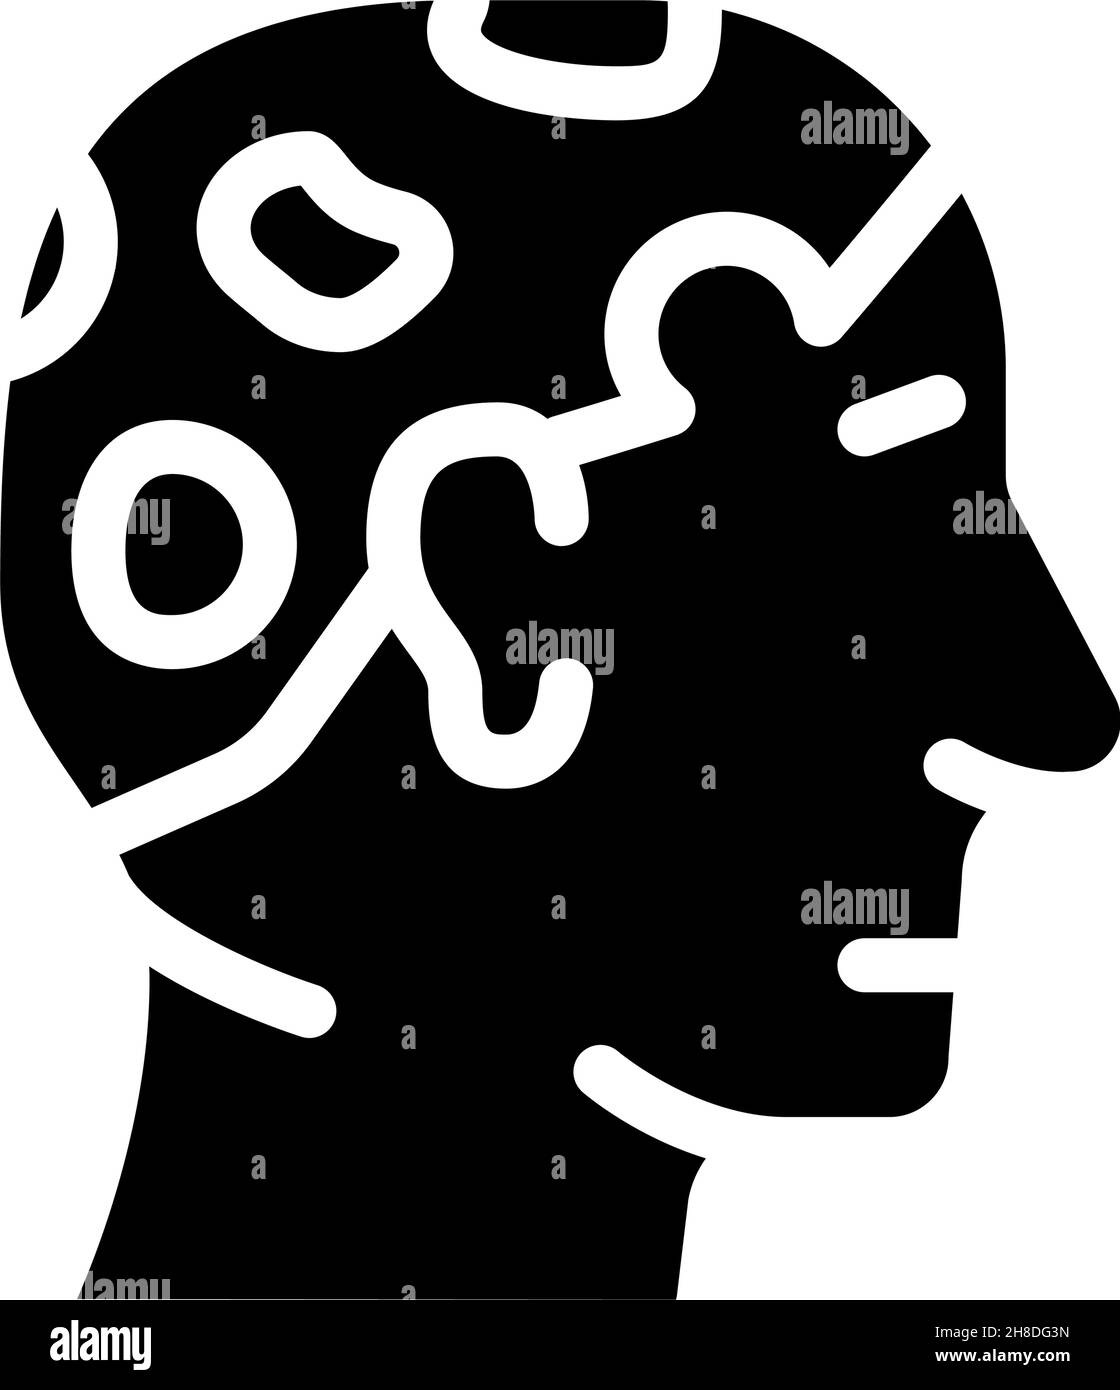 alopecia areata glyph icon vector illustration Stock Vector